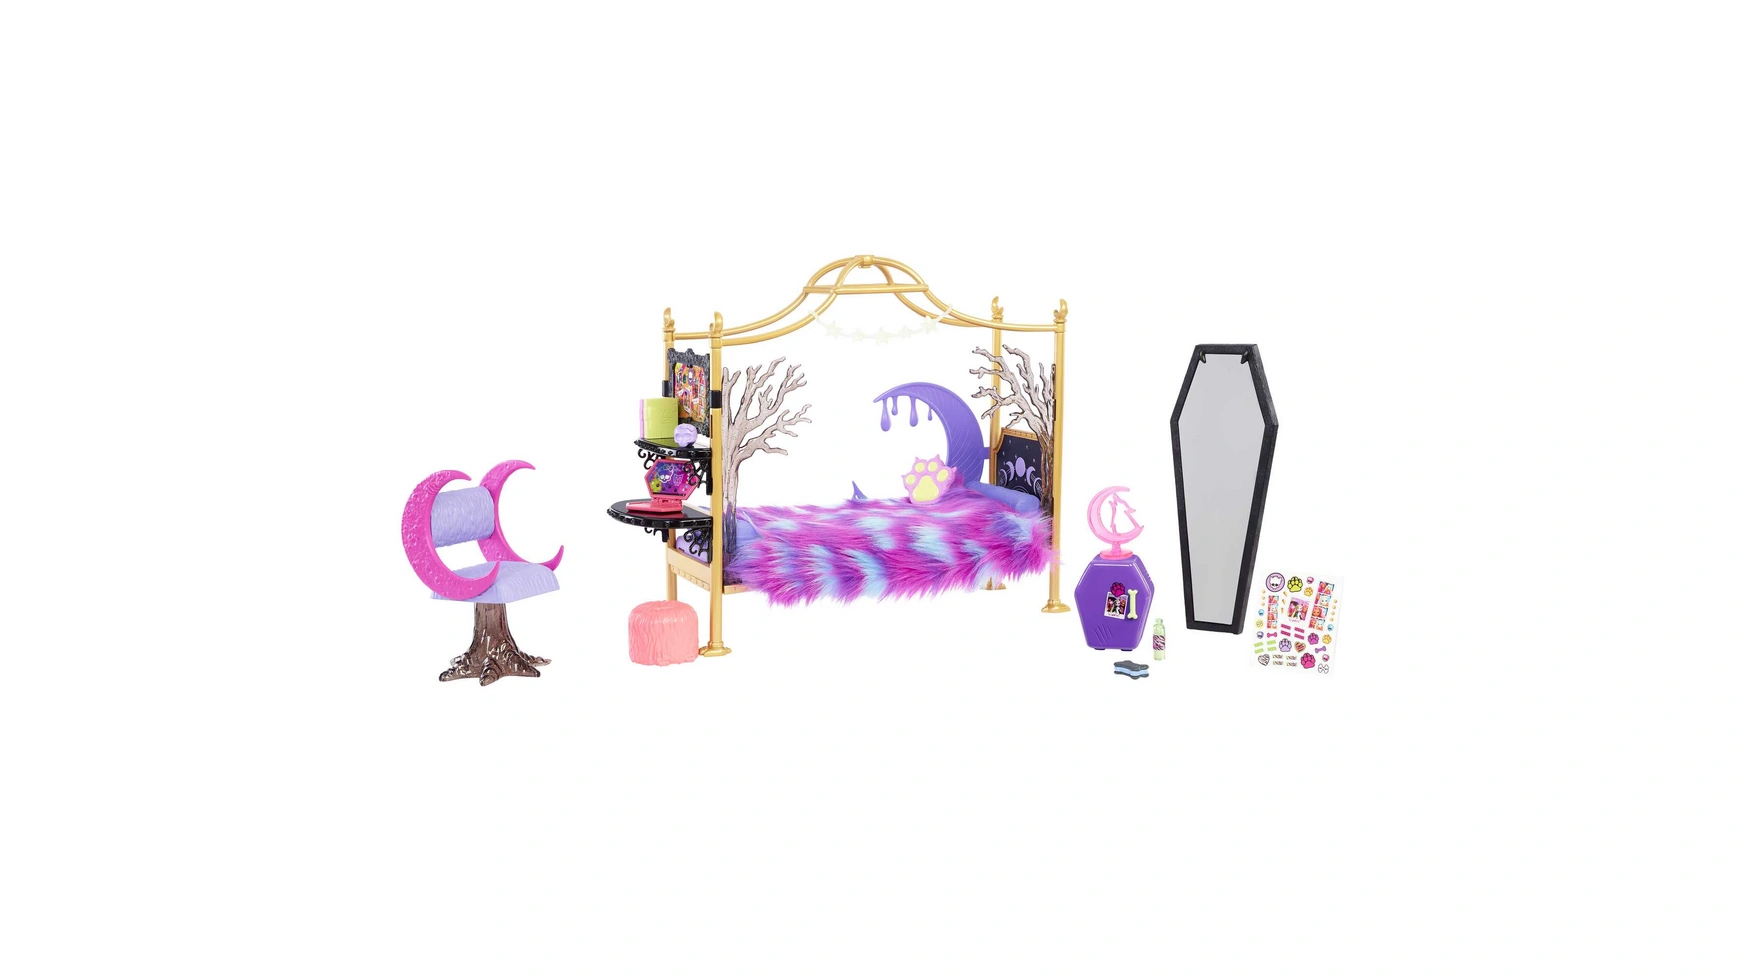 Спальня клодин вульф в monster high Mattel песочные настольные игрушки двойная кровать маленькая двуспальная кровать декор мини мебель для дома